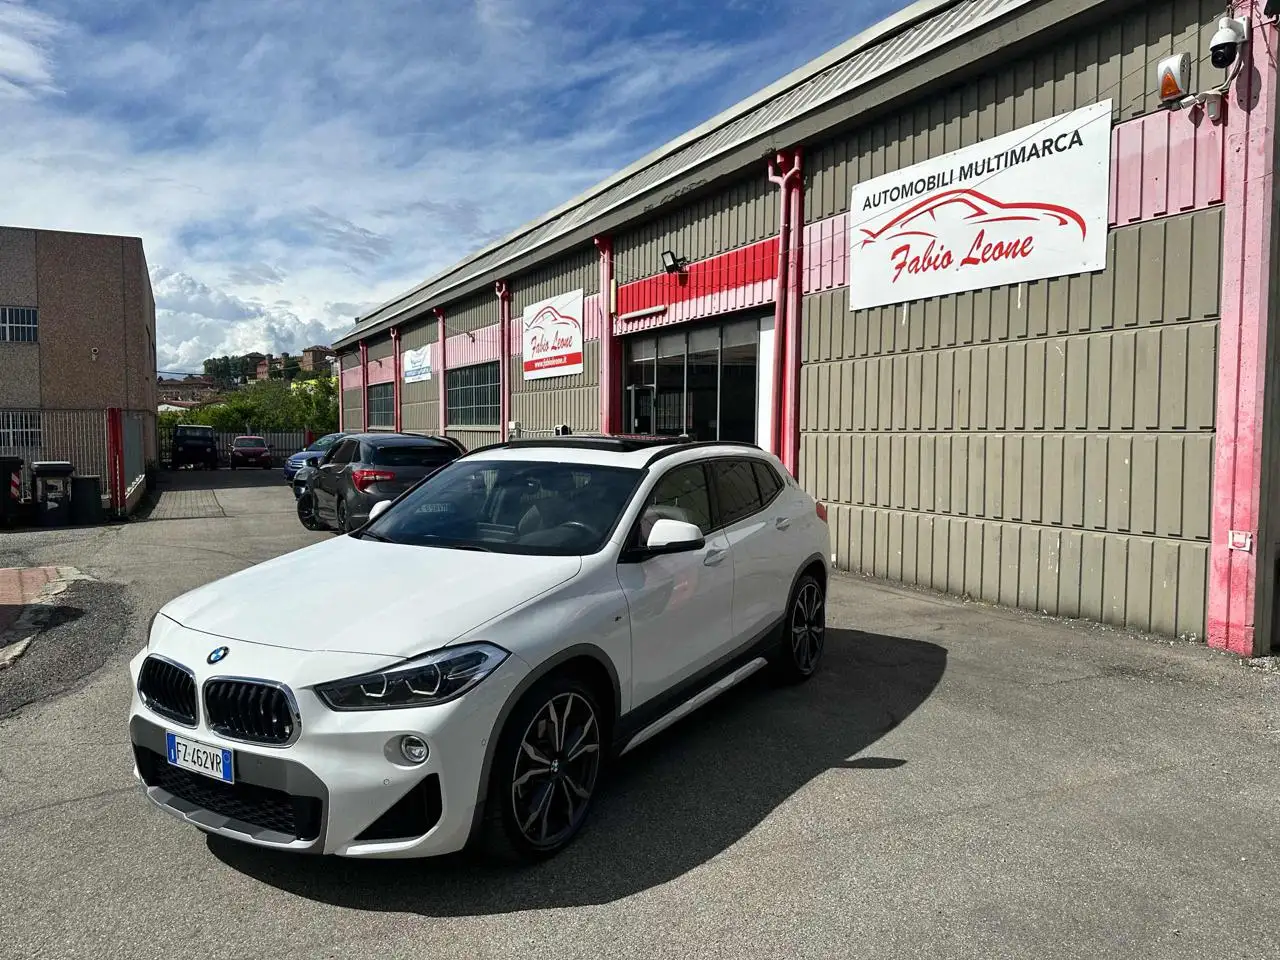 BMW X2 SUV/4x4/Pick-up in Wit tweedehands in Moncalieri - Torino - To voor € 29.890,-